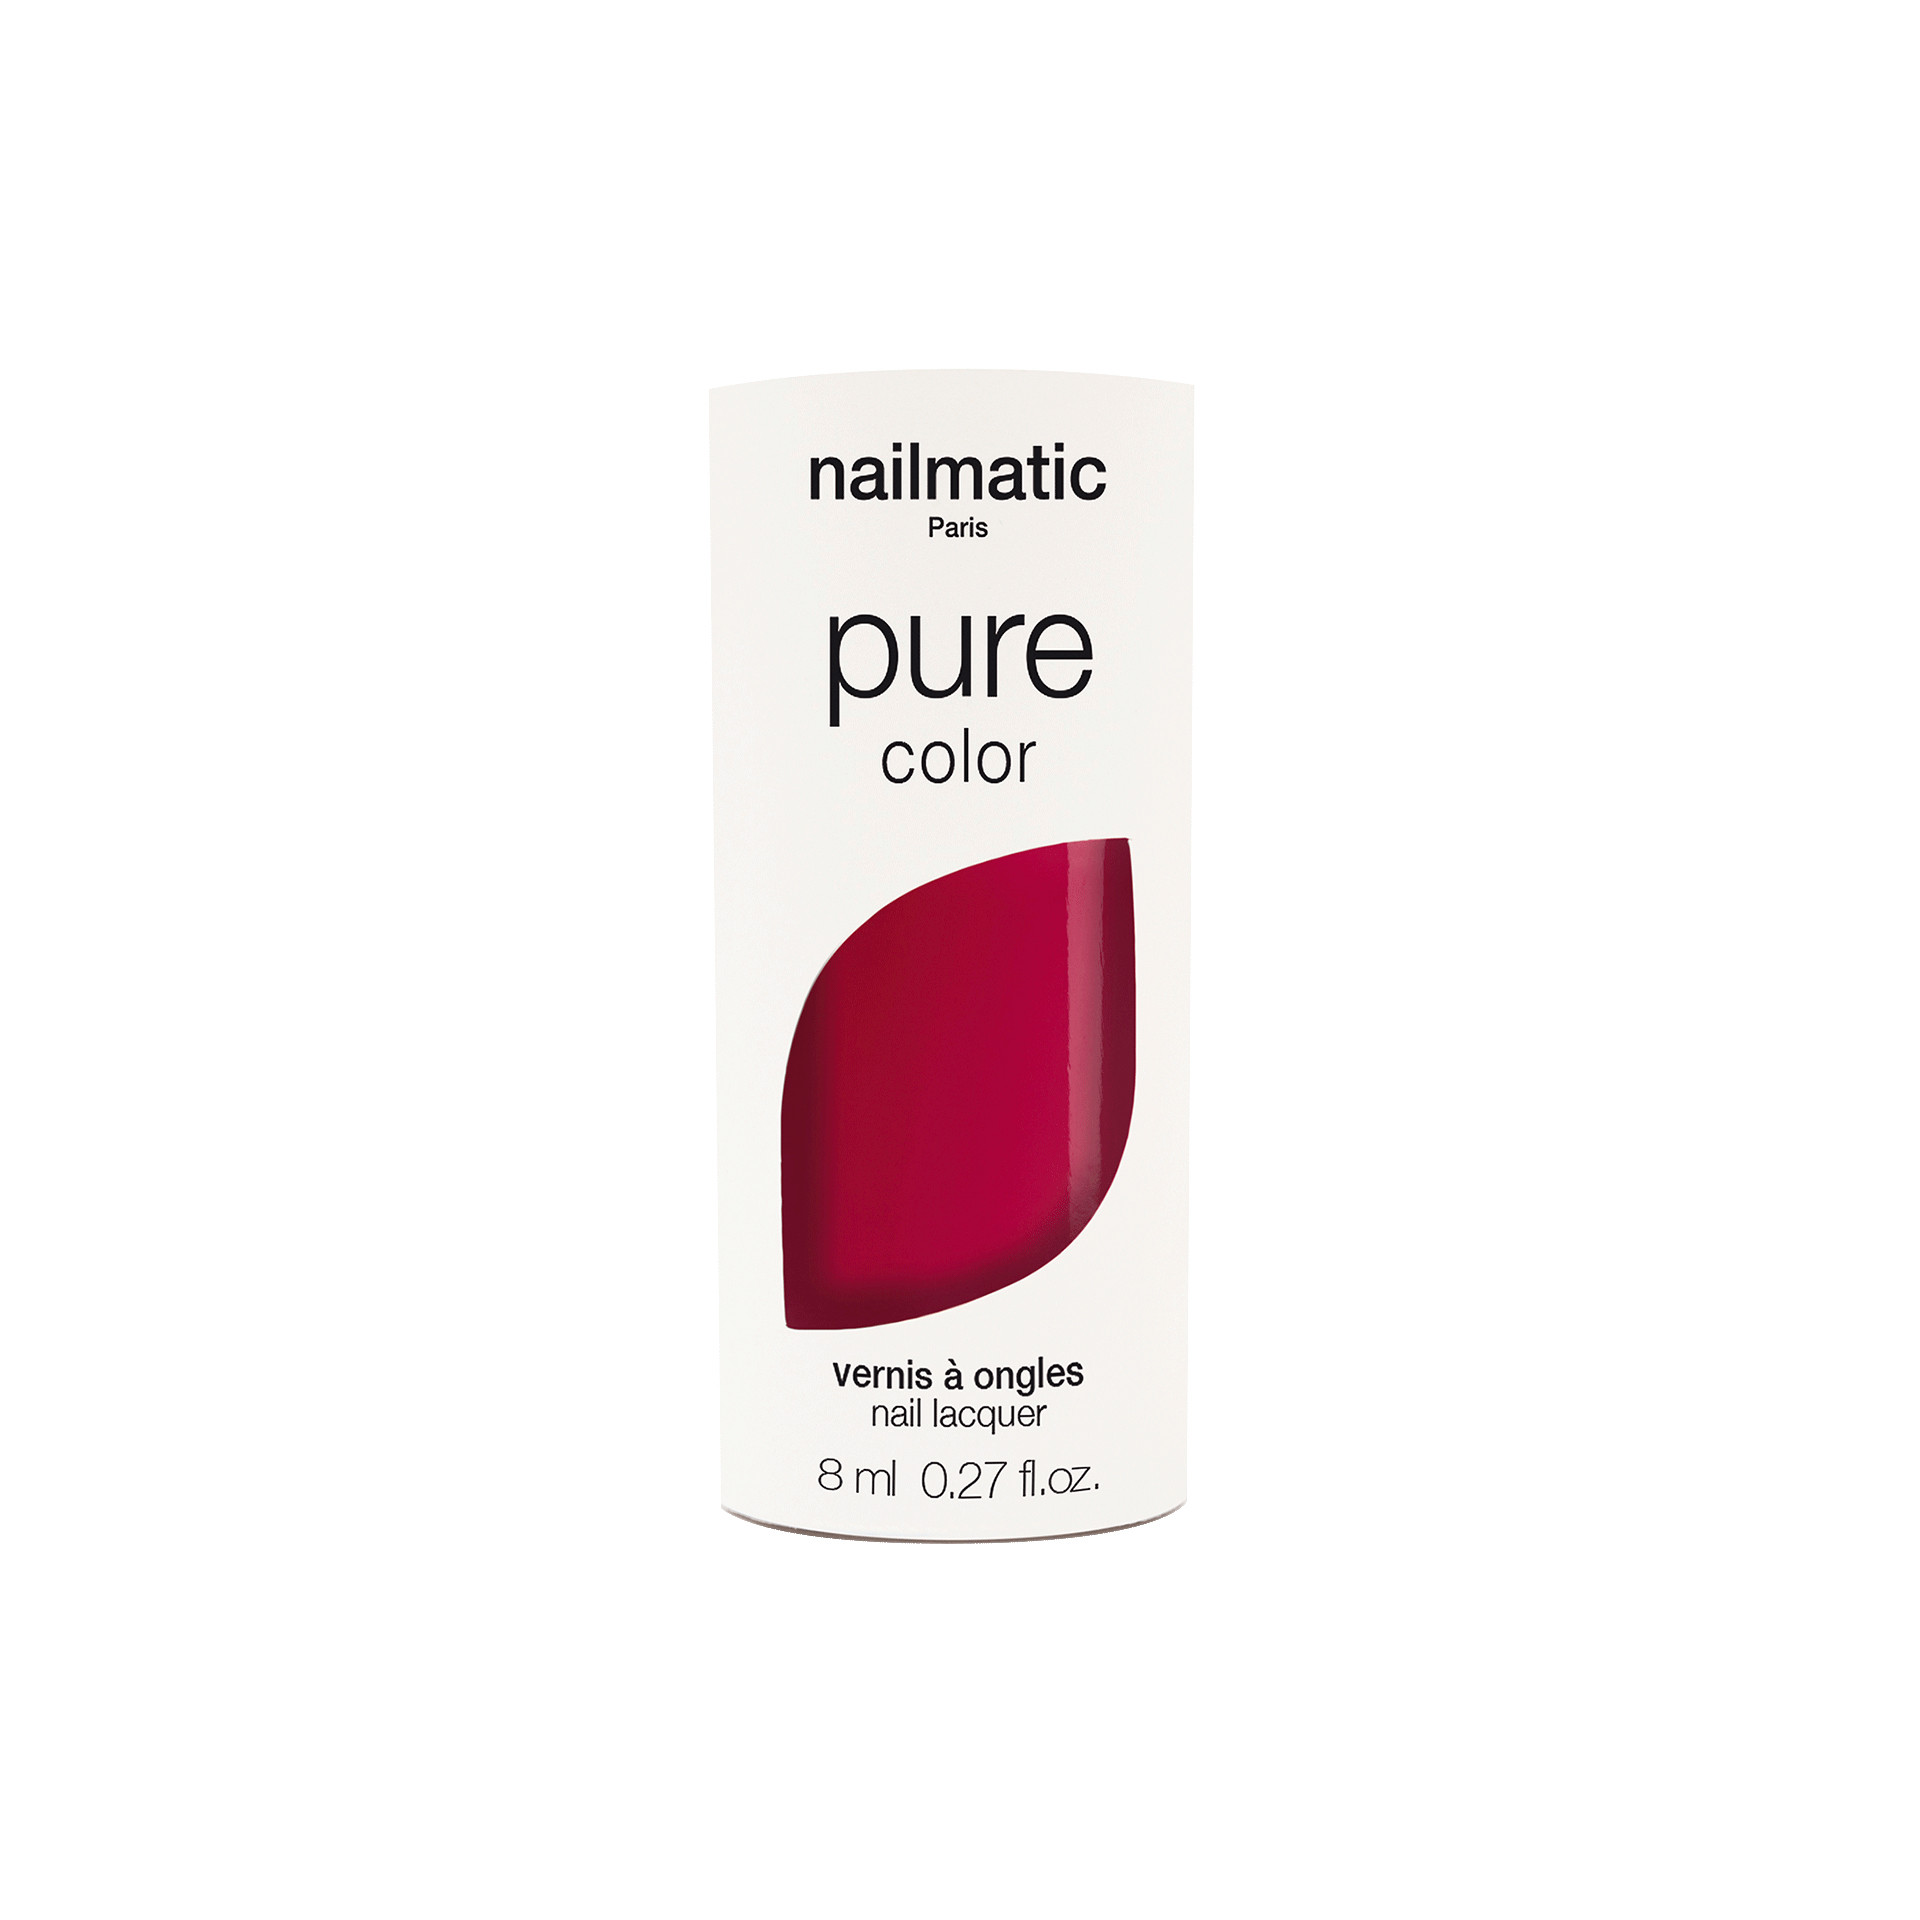 Vernis rouge framboise intense Paloma avec packaging